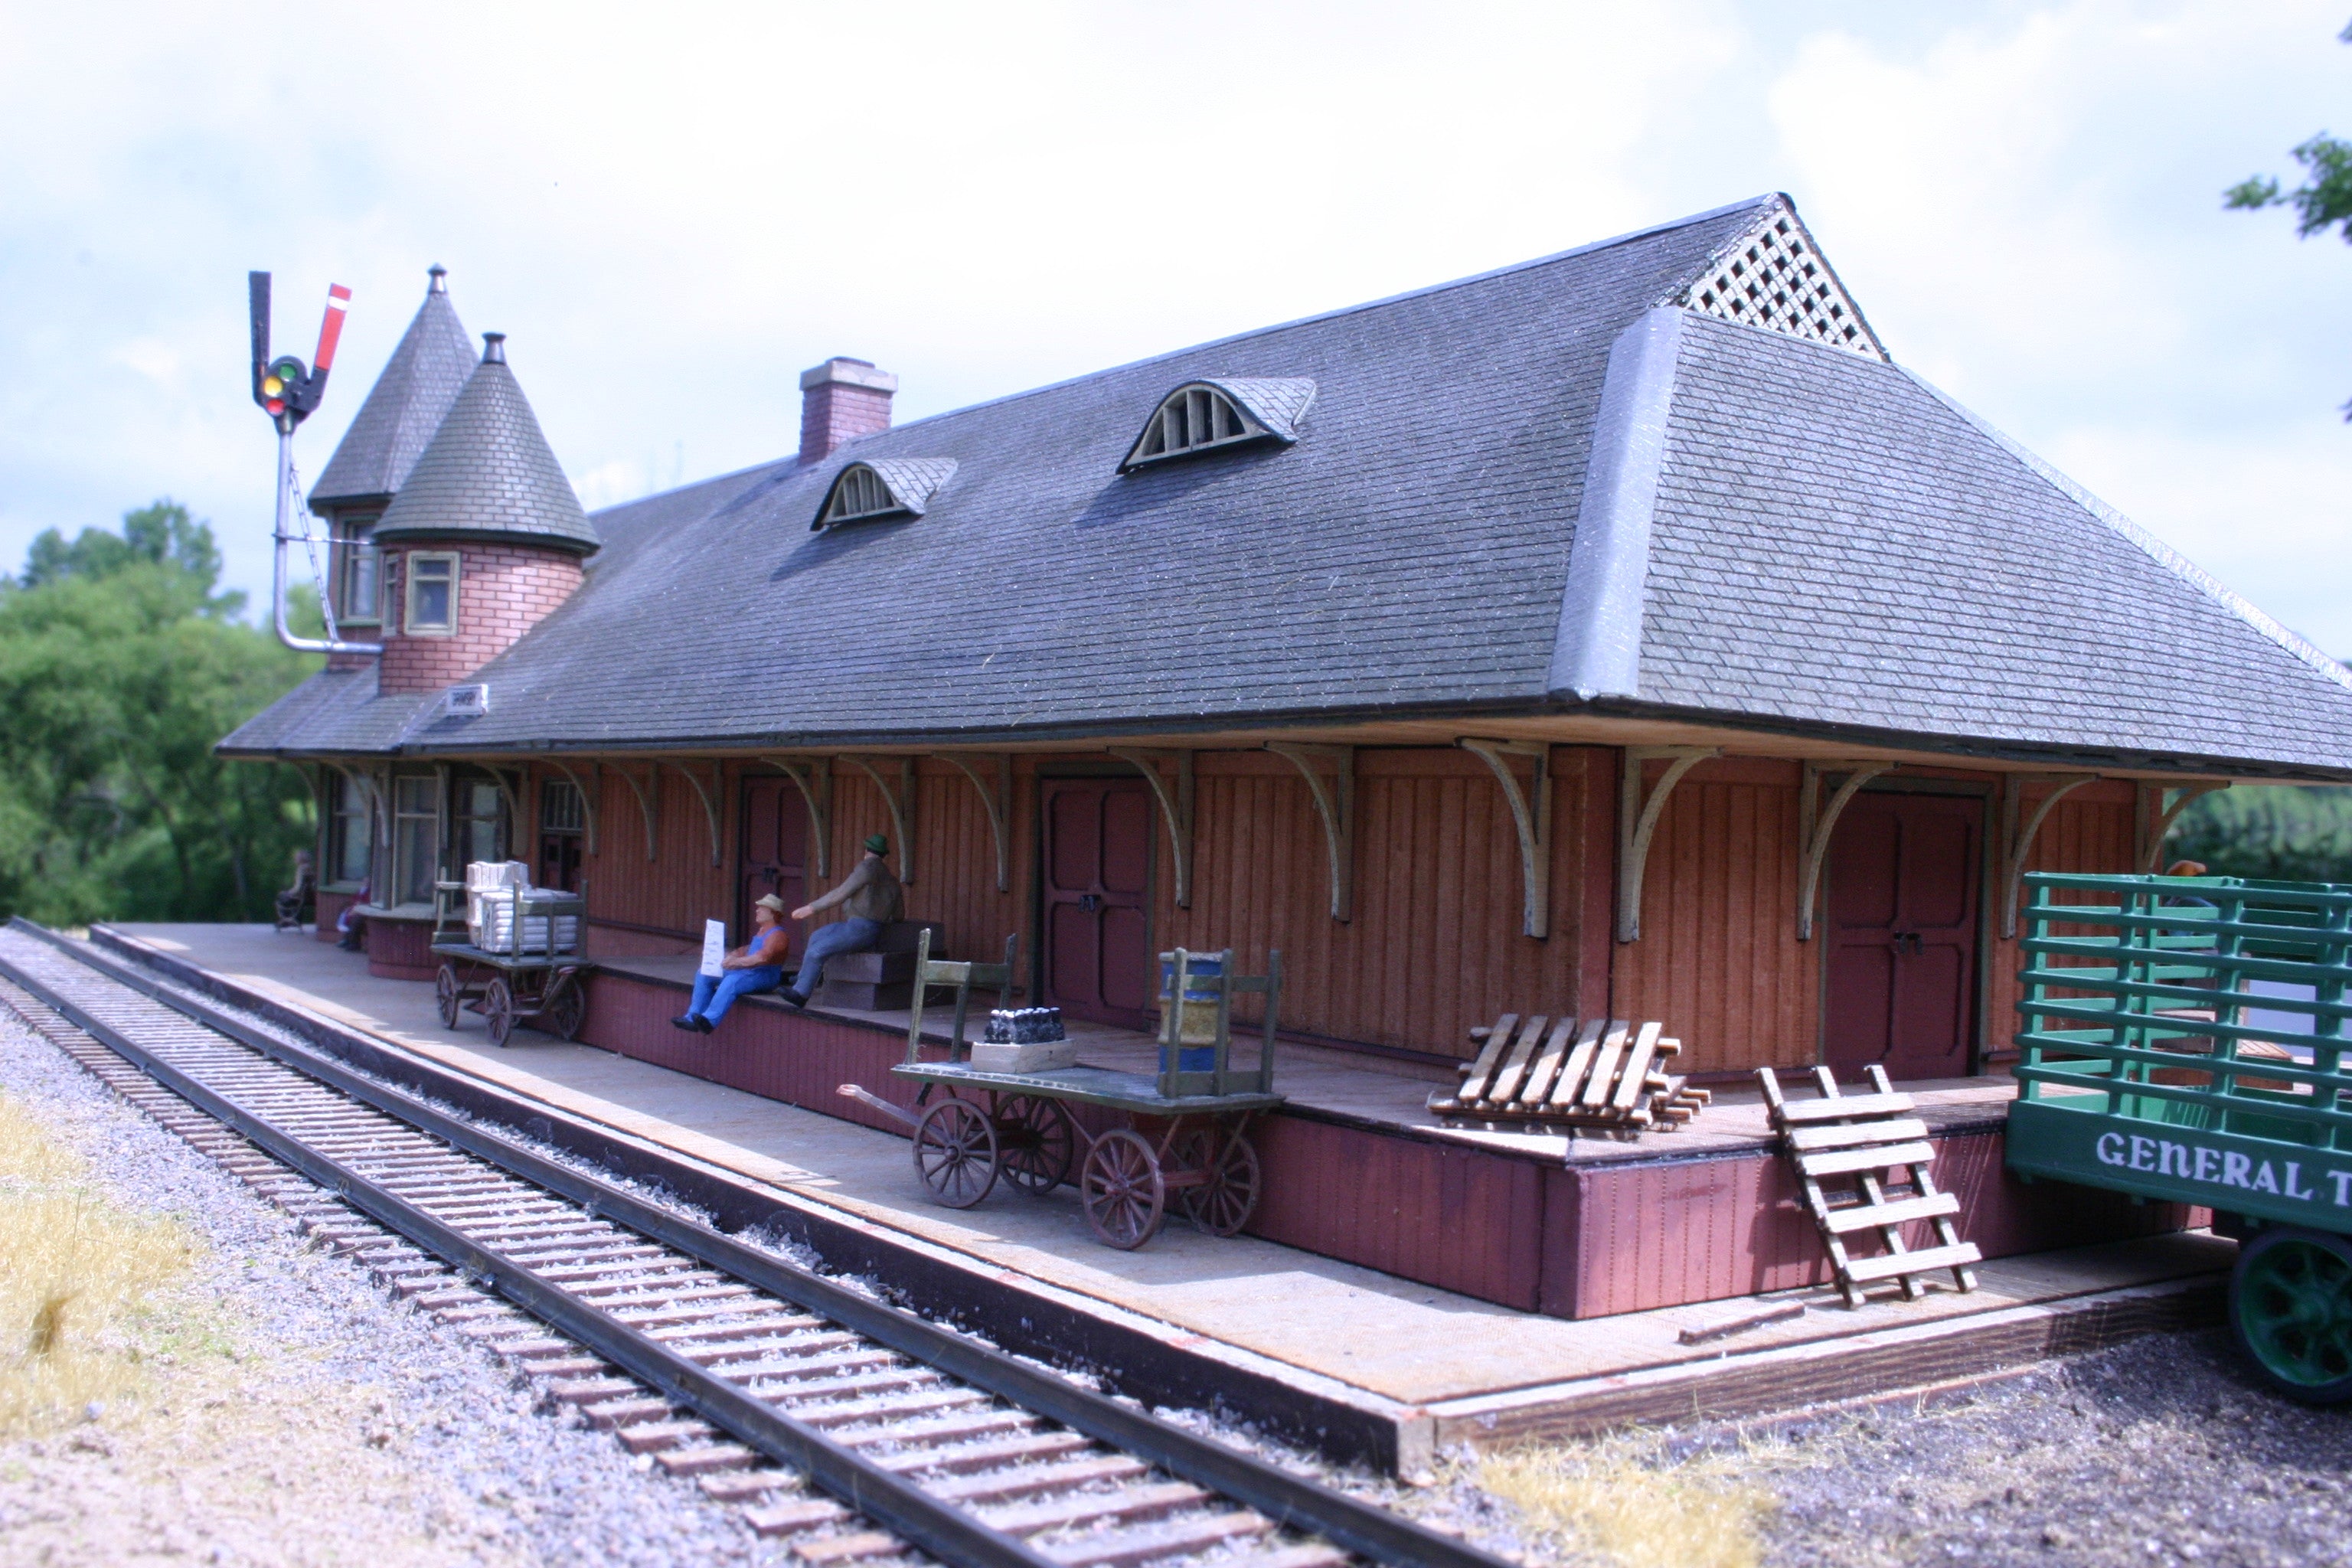 HO Scale Grimsby Station Kit - ITLA